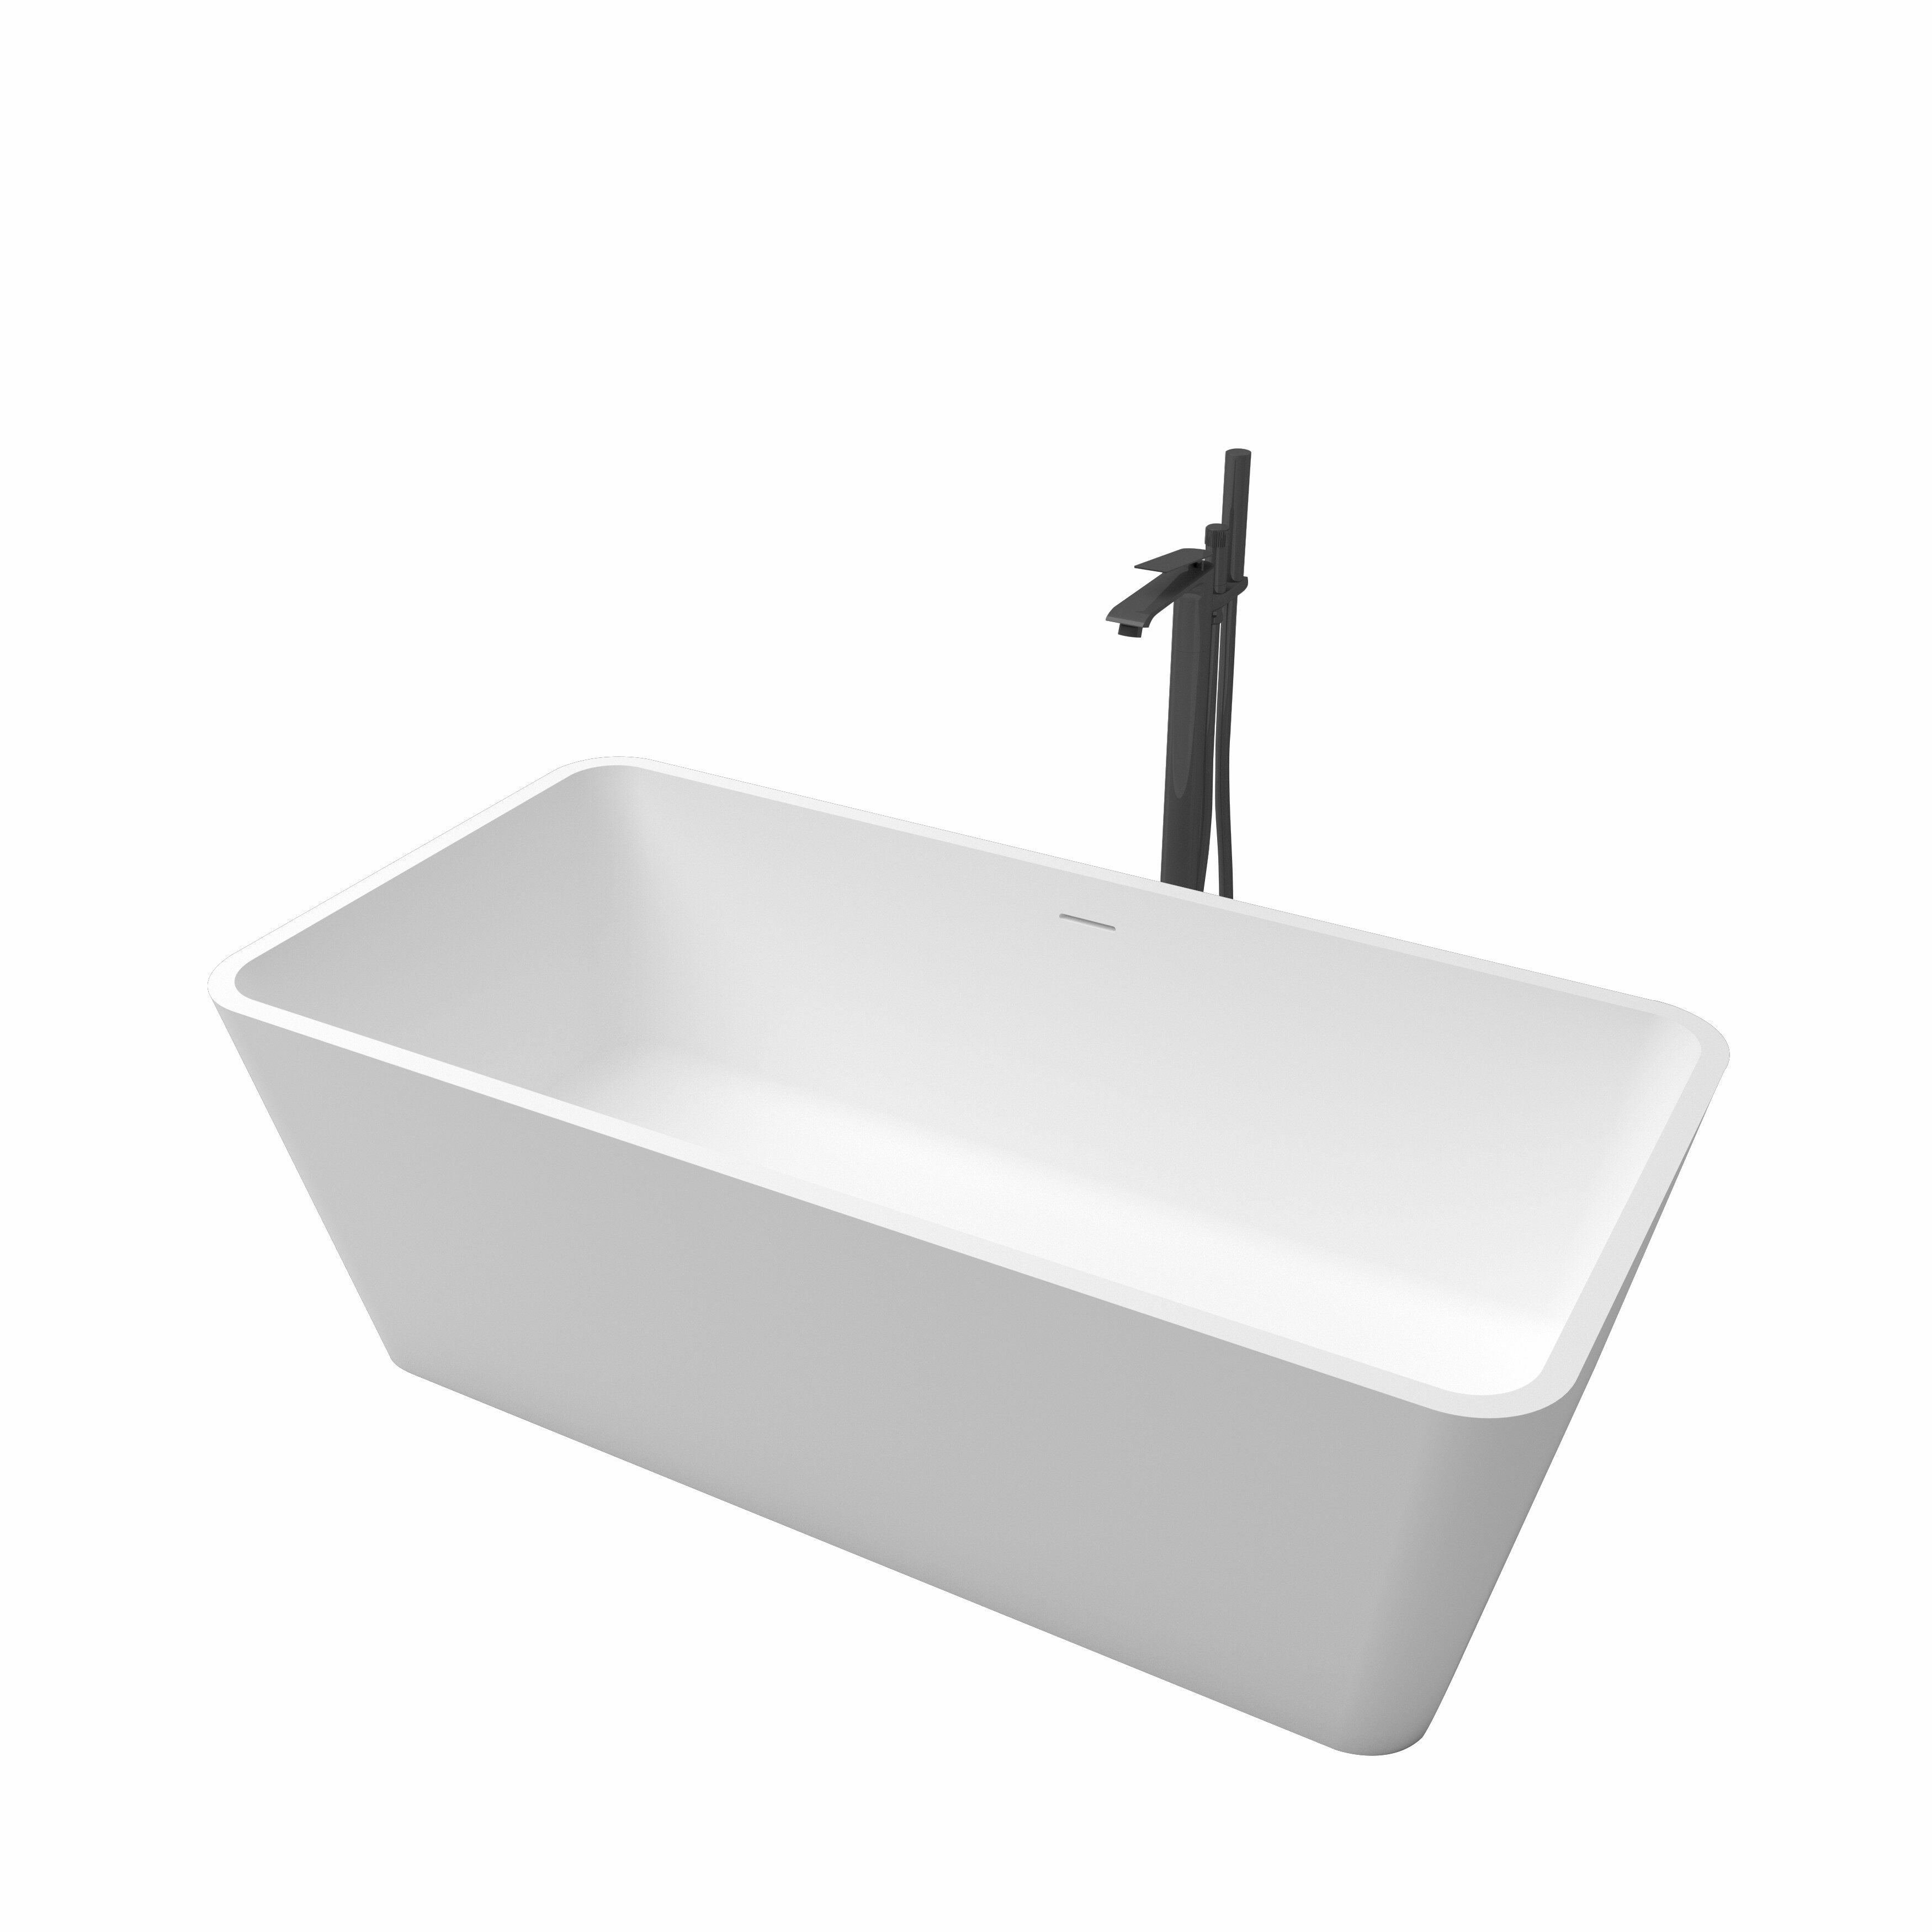 Acrylic Bathtub Solid Surface Oval Acrylic Modern Bath Tub Hotel Baths Free Standing